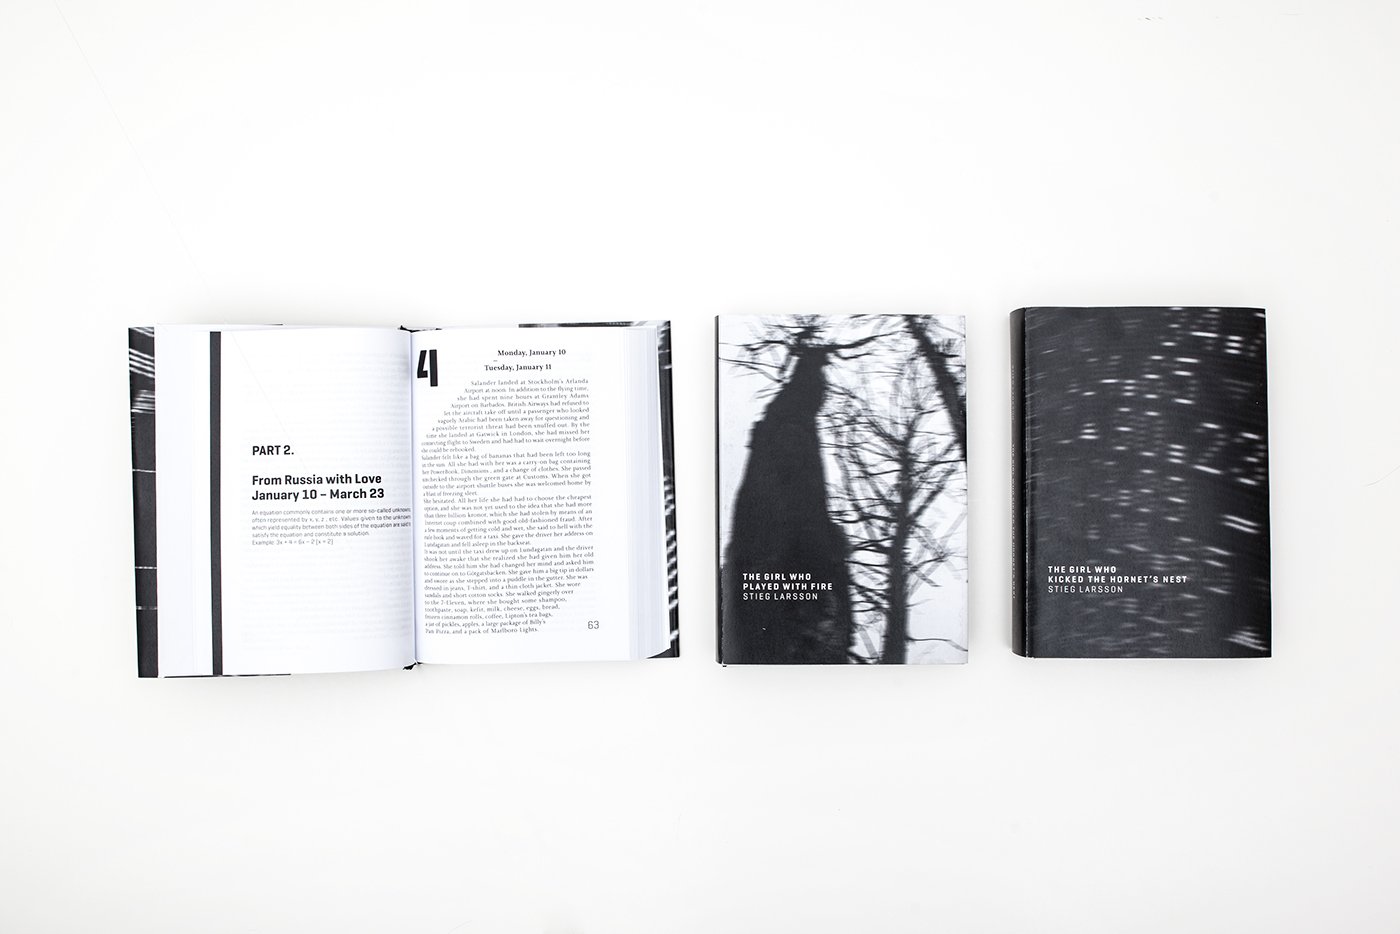 book design graphic Larsson millenium